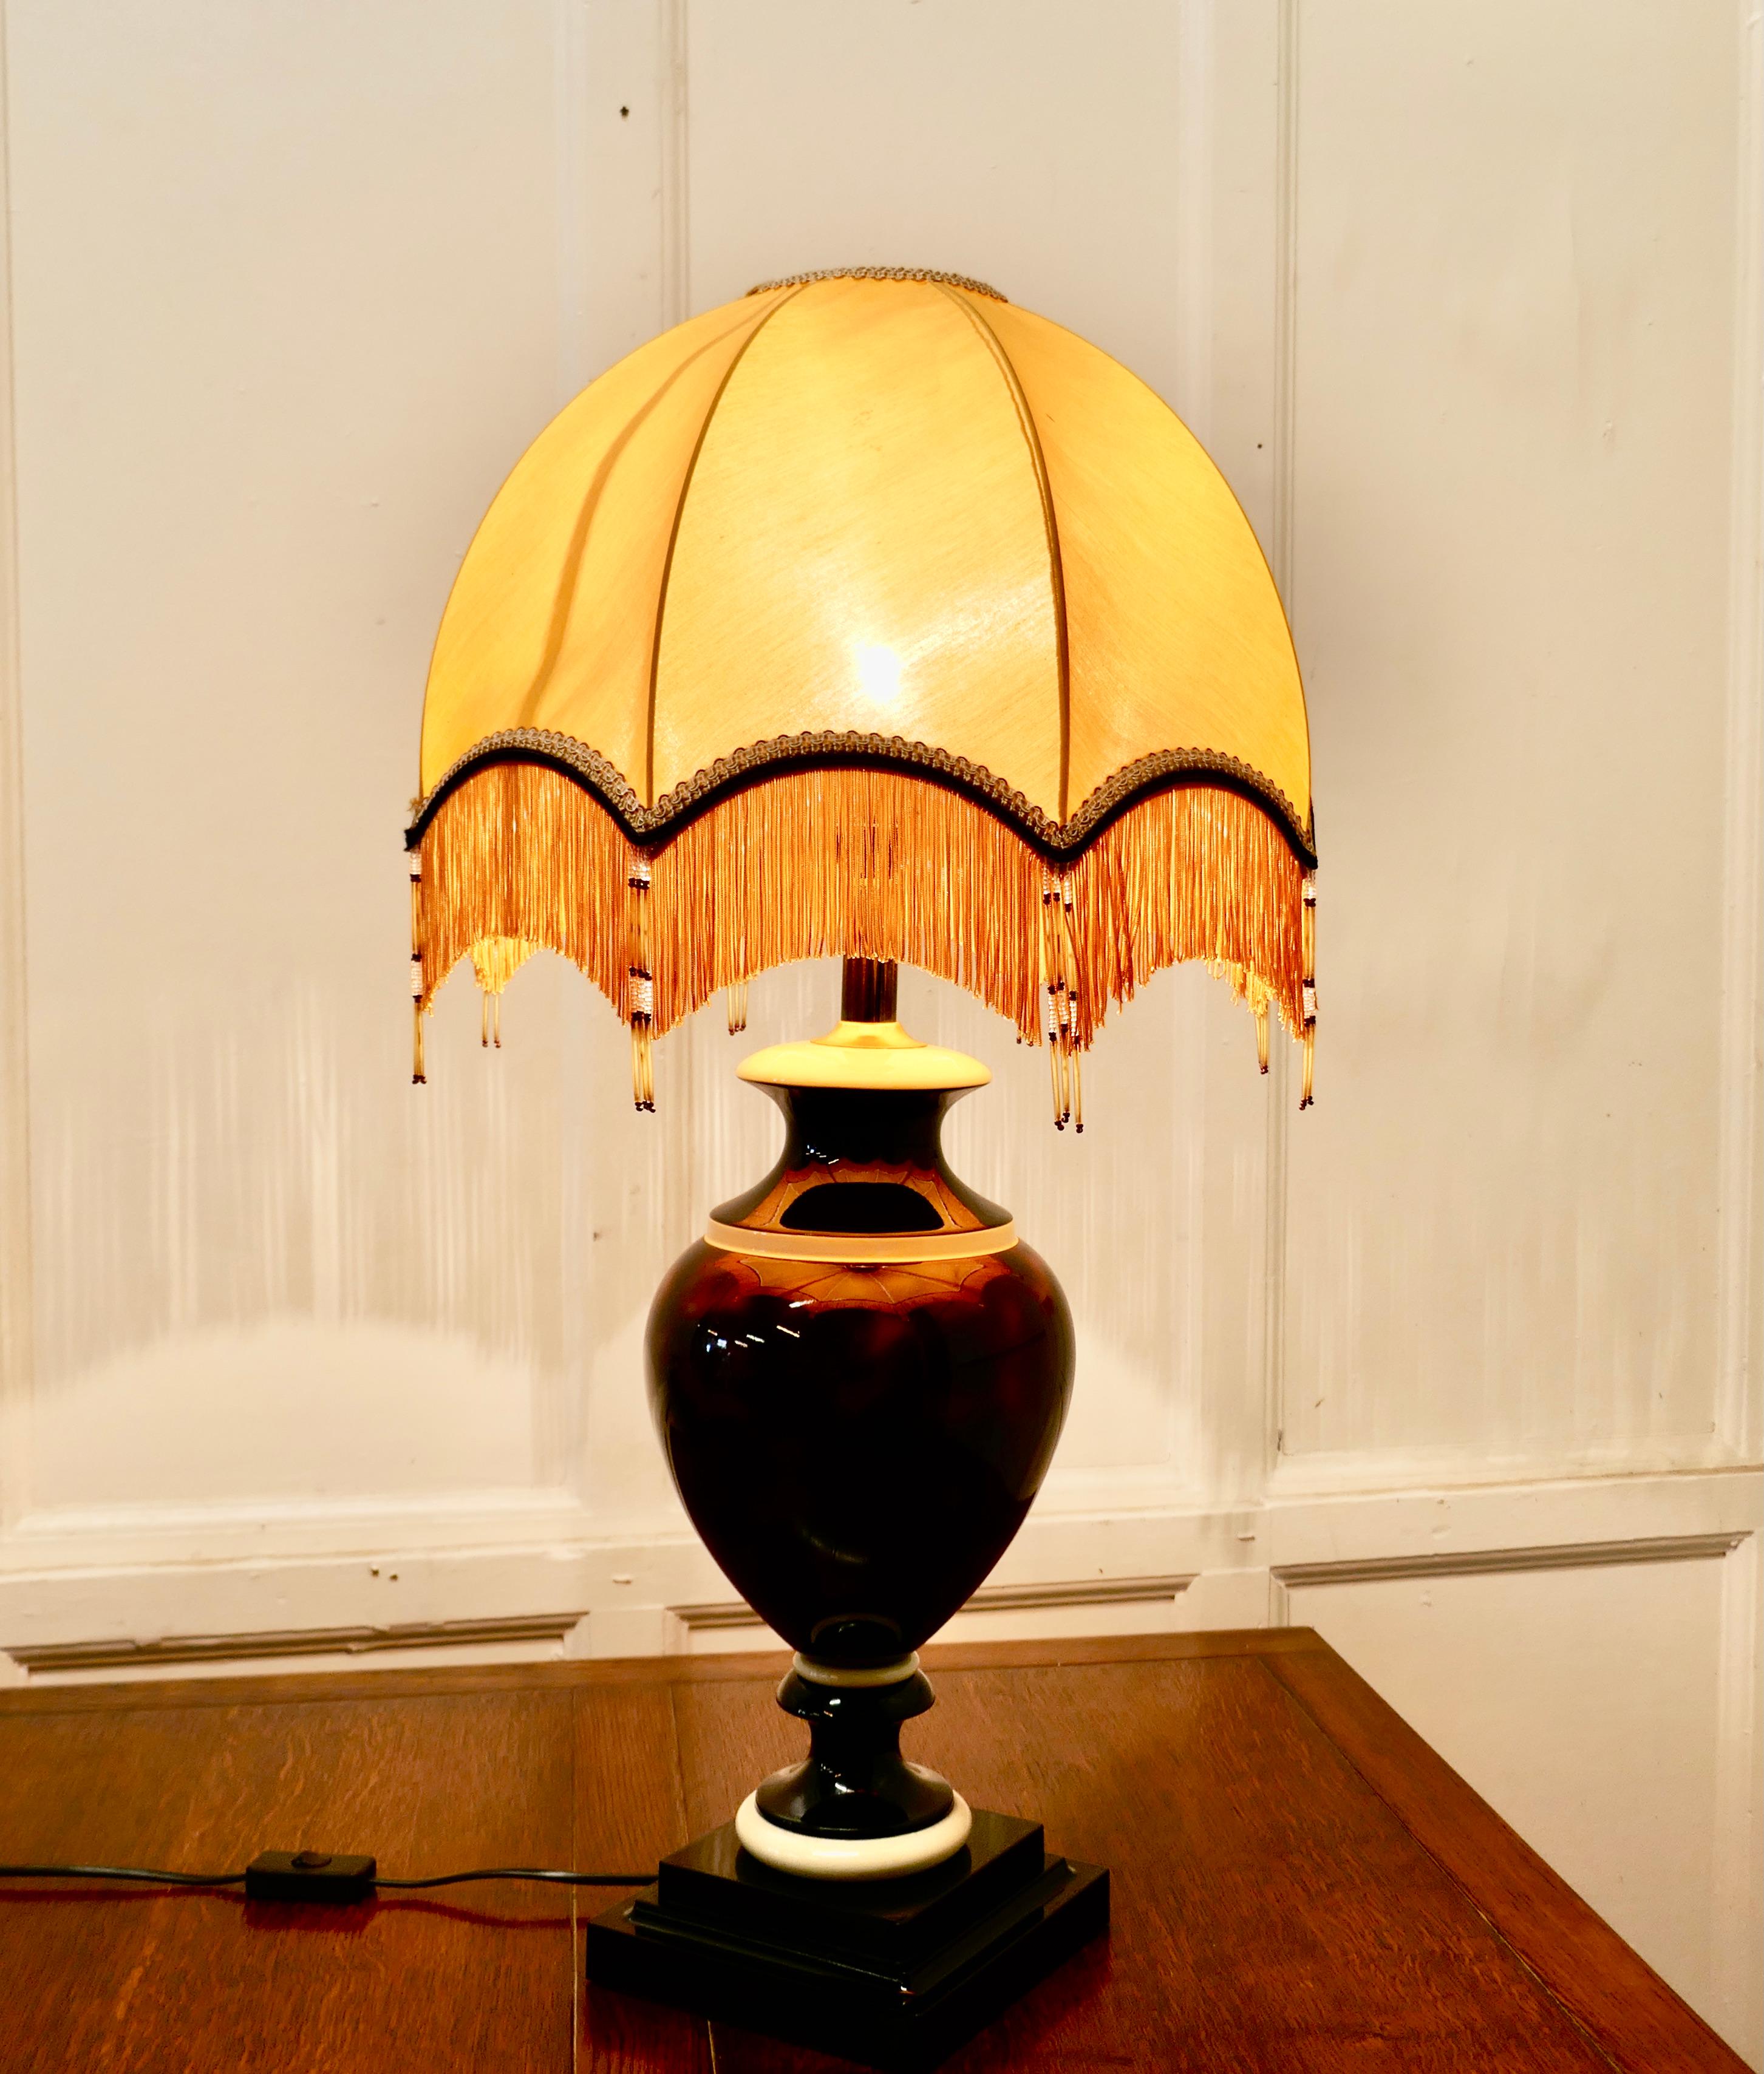 Lampe de table française en céramique bulbeuse avec abat-jour en forme de dôme

La lampe est composée d'une grande urne en céramique décorée de simili écaille de tortue, elle est surmontée d'un superbe abat-jour en forme de dôme 
La lampe et